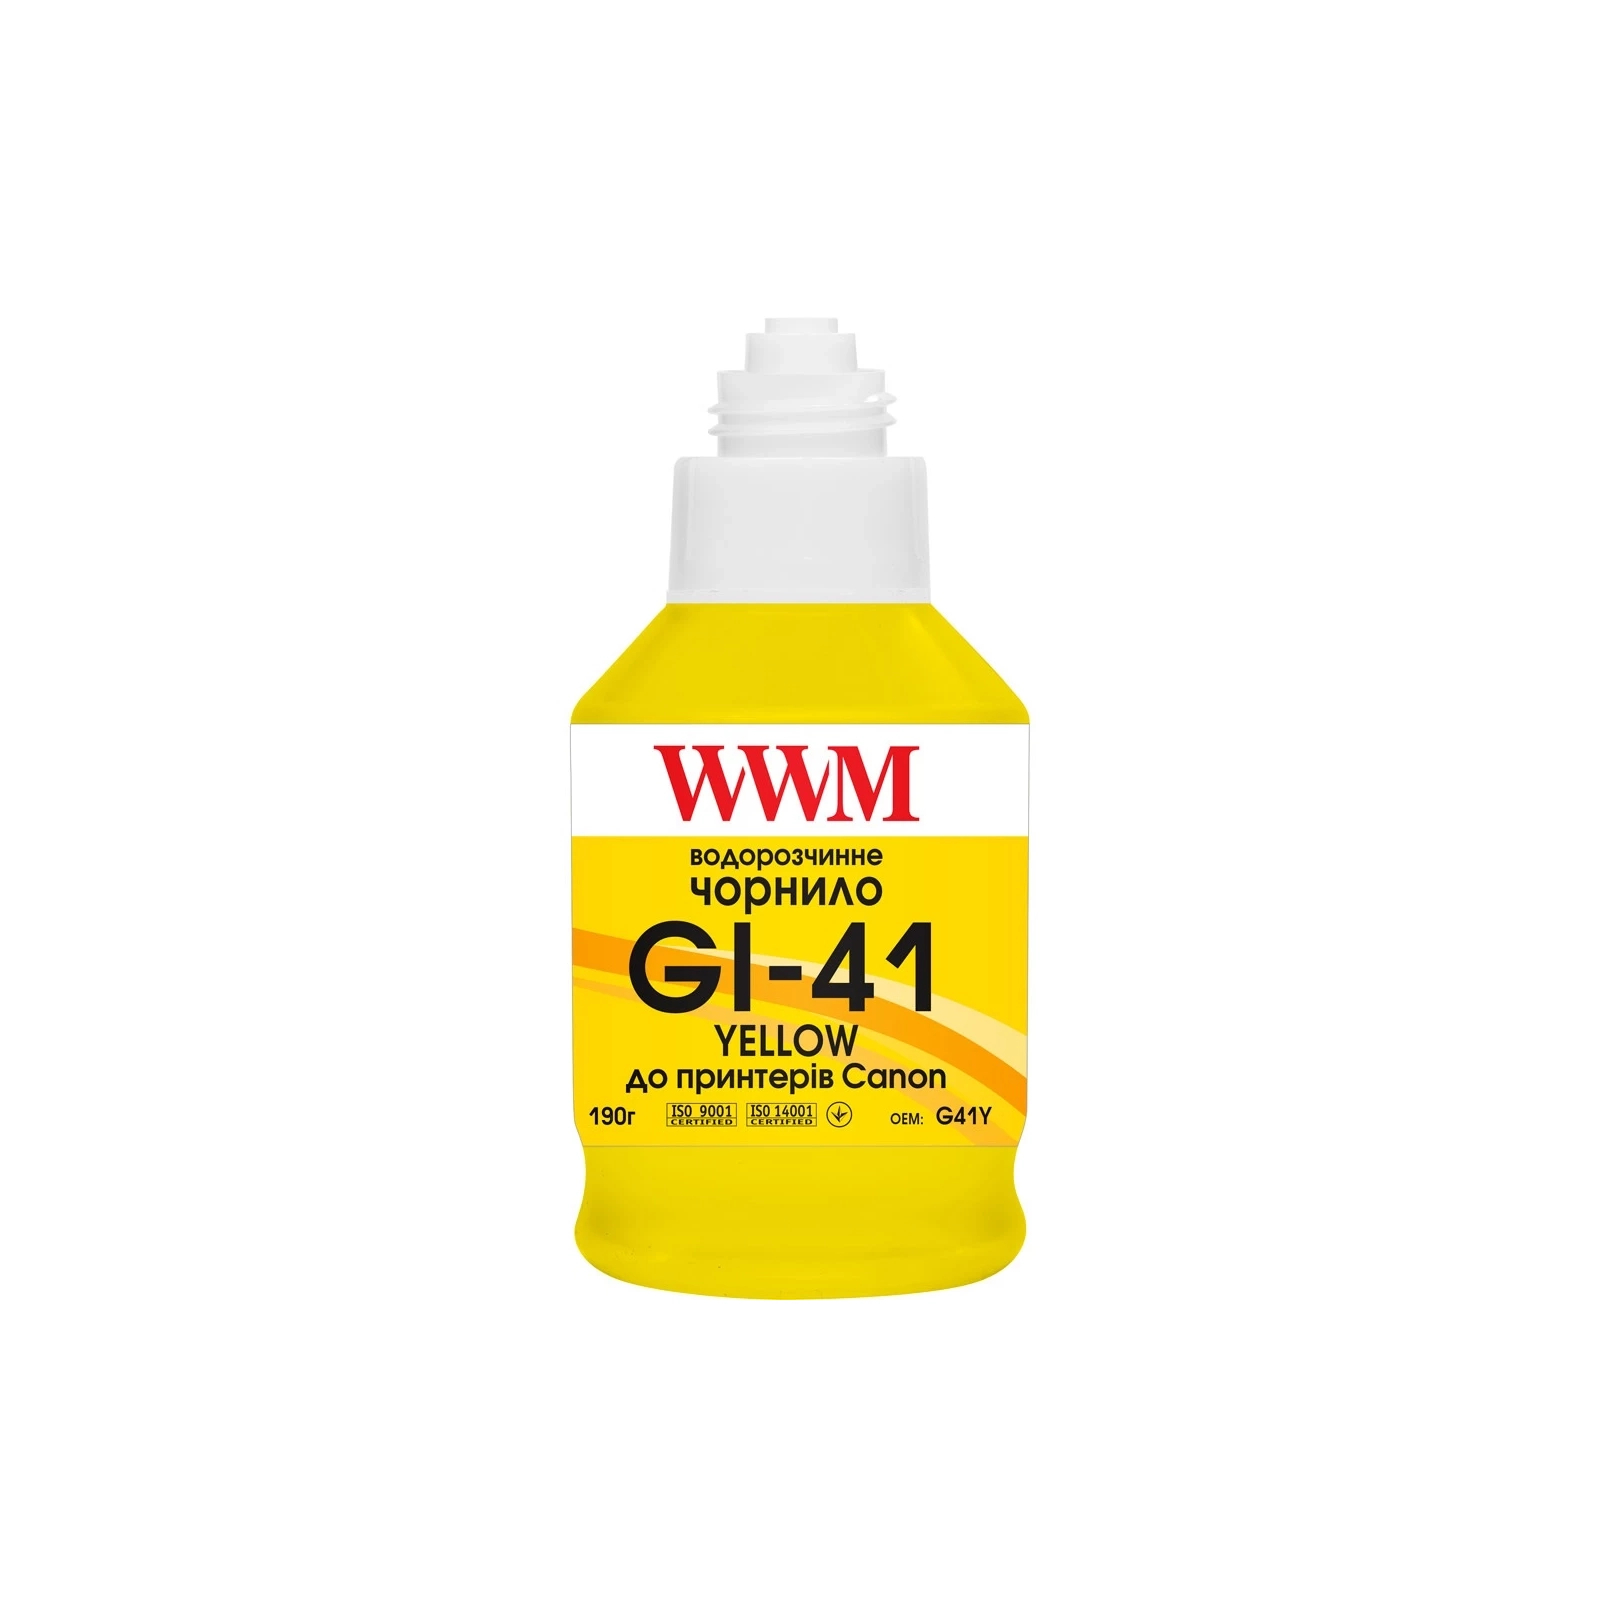 Чернила WWM Canon GI-41 для Pixma G2420/3420 190г Magenta (KeyLock) (G41M) изображение 2